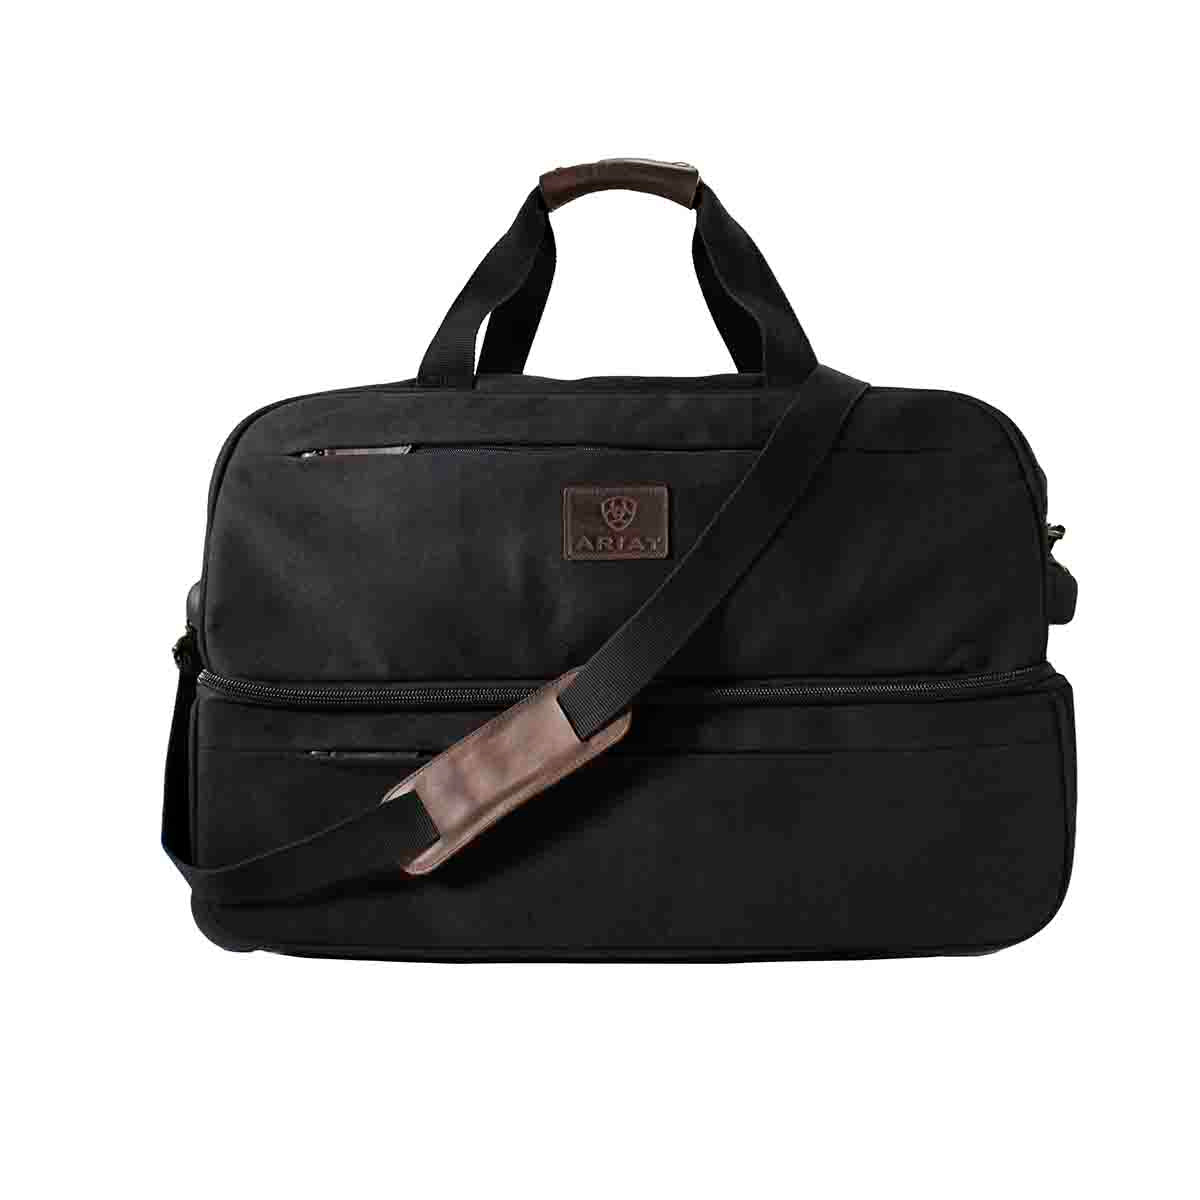 Ariat Men's Gear Rolling Duffle Bag Black/Brown